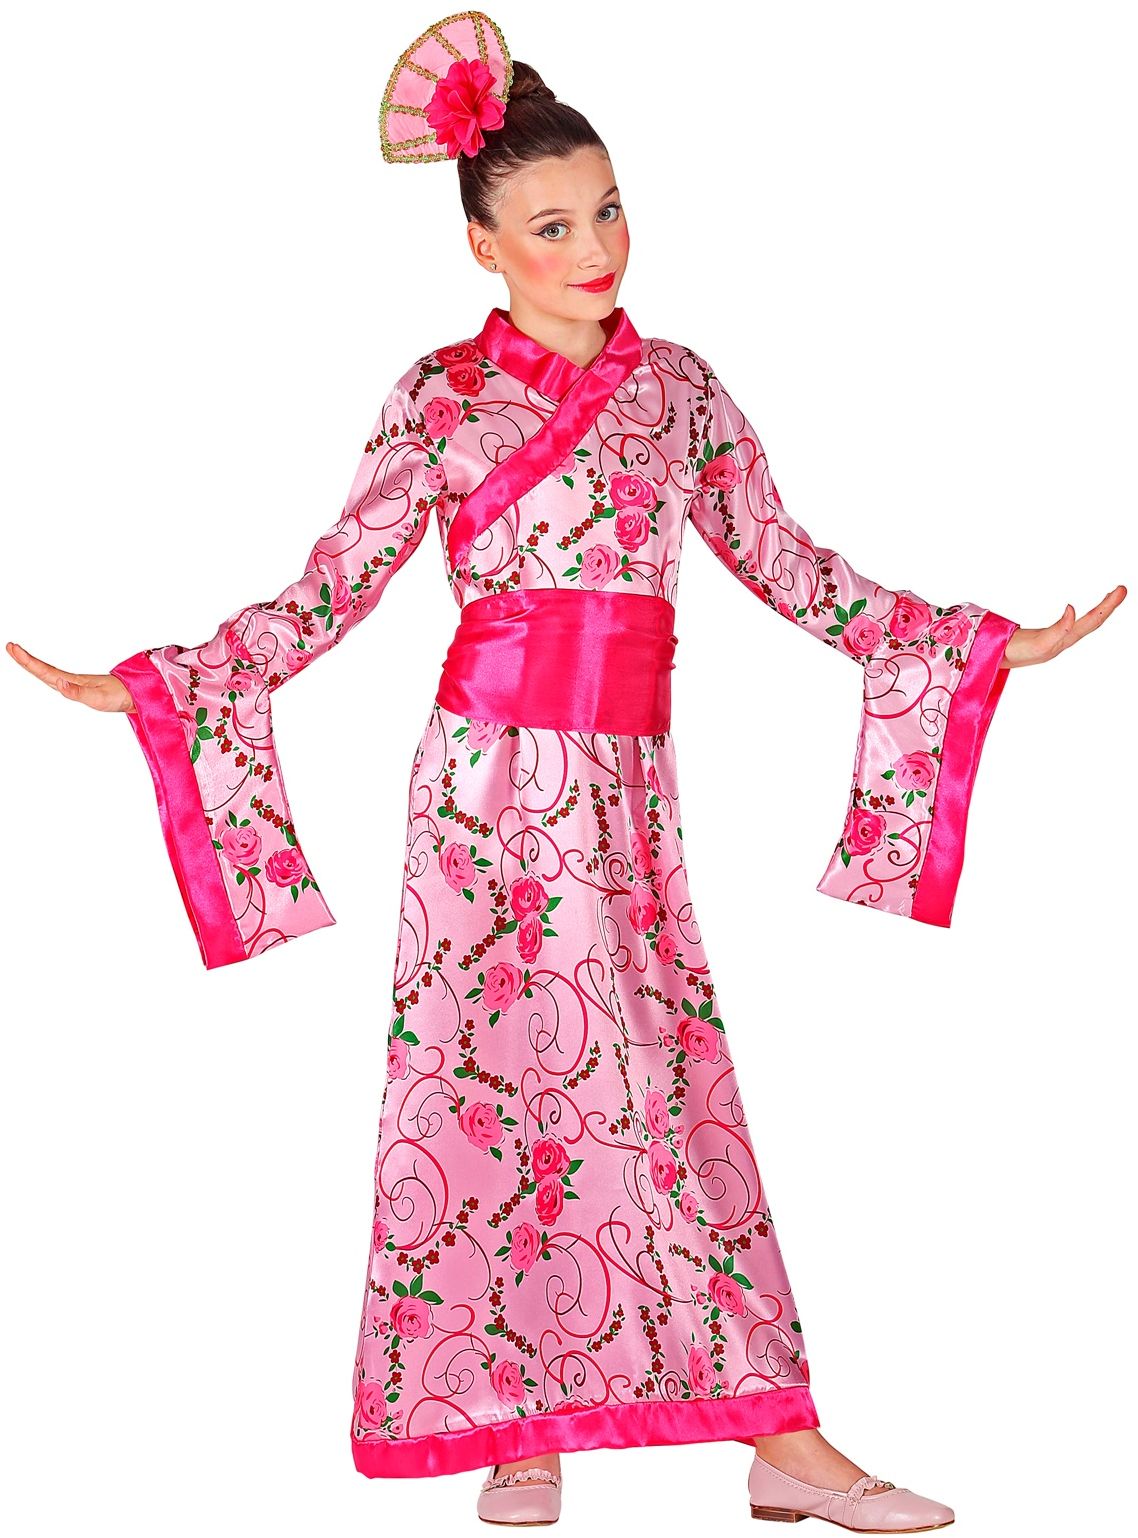 Roze geisha prinses jurk kind